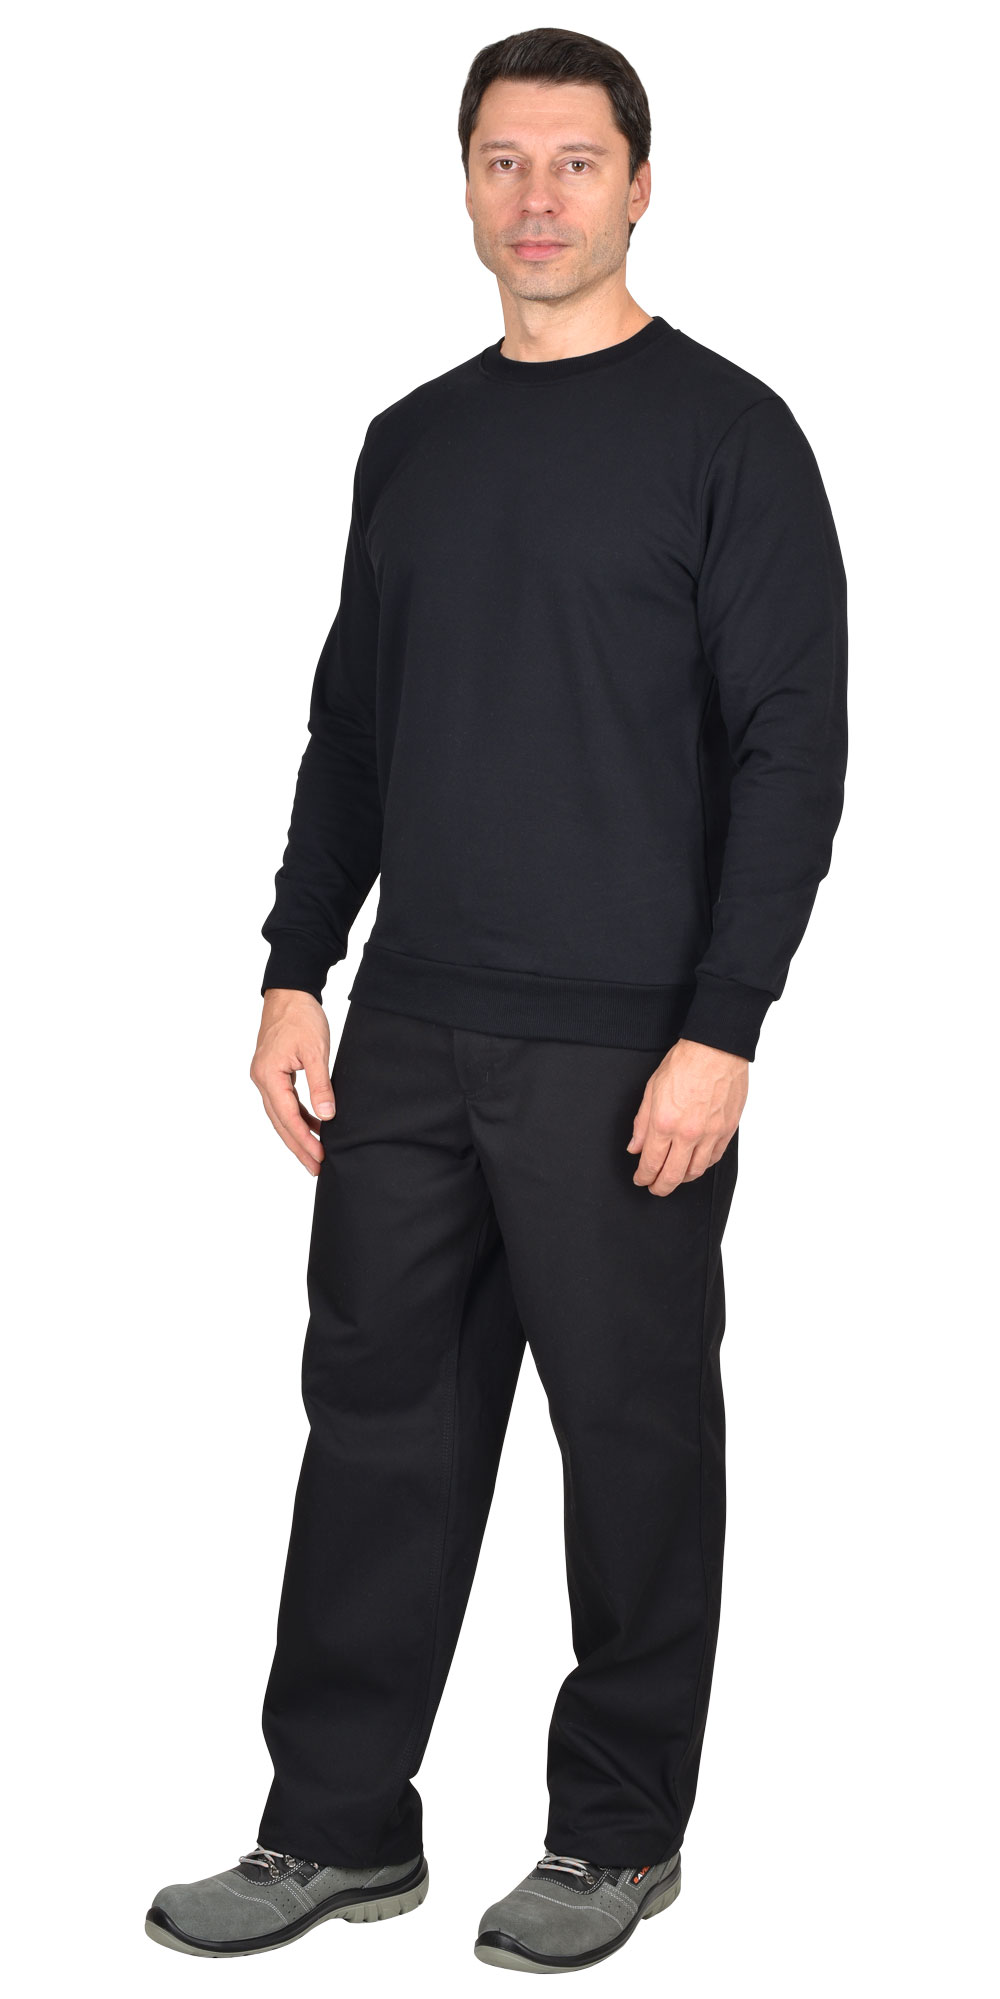 Толстовка-футер, длинный рукав с манжетом, цвет: черный, ткань: 100% ХБ